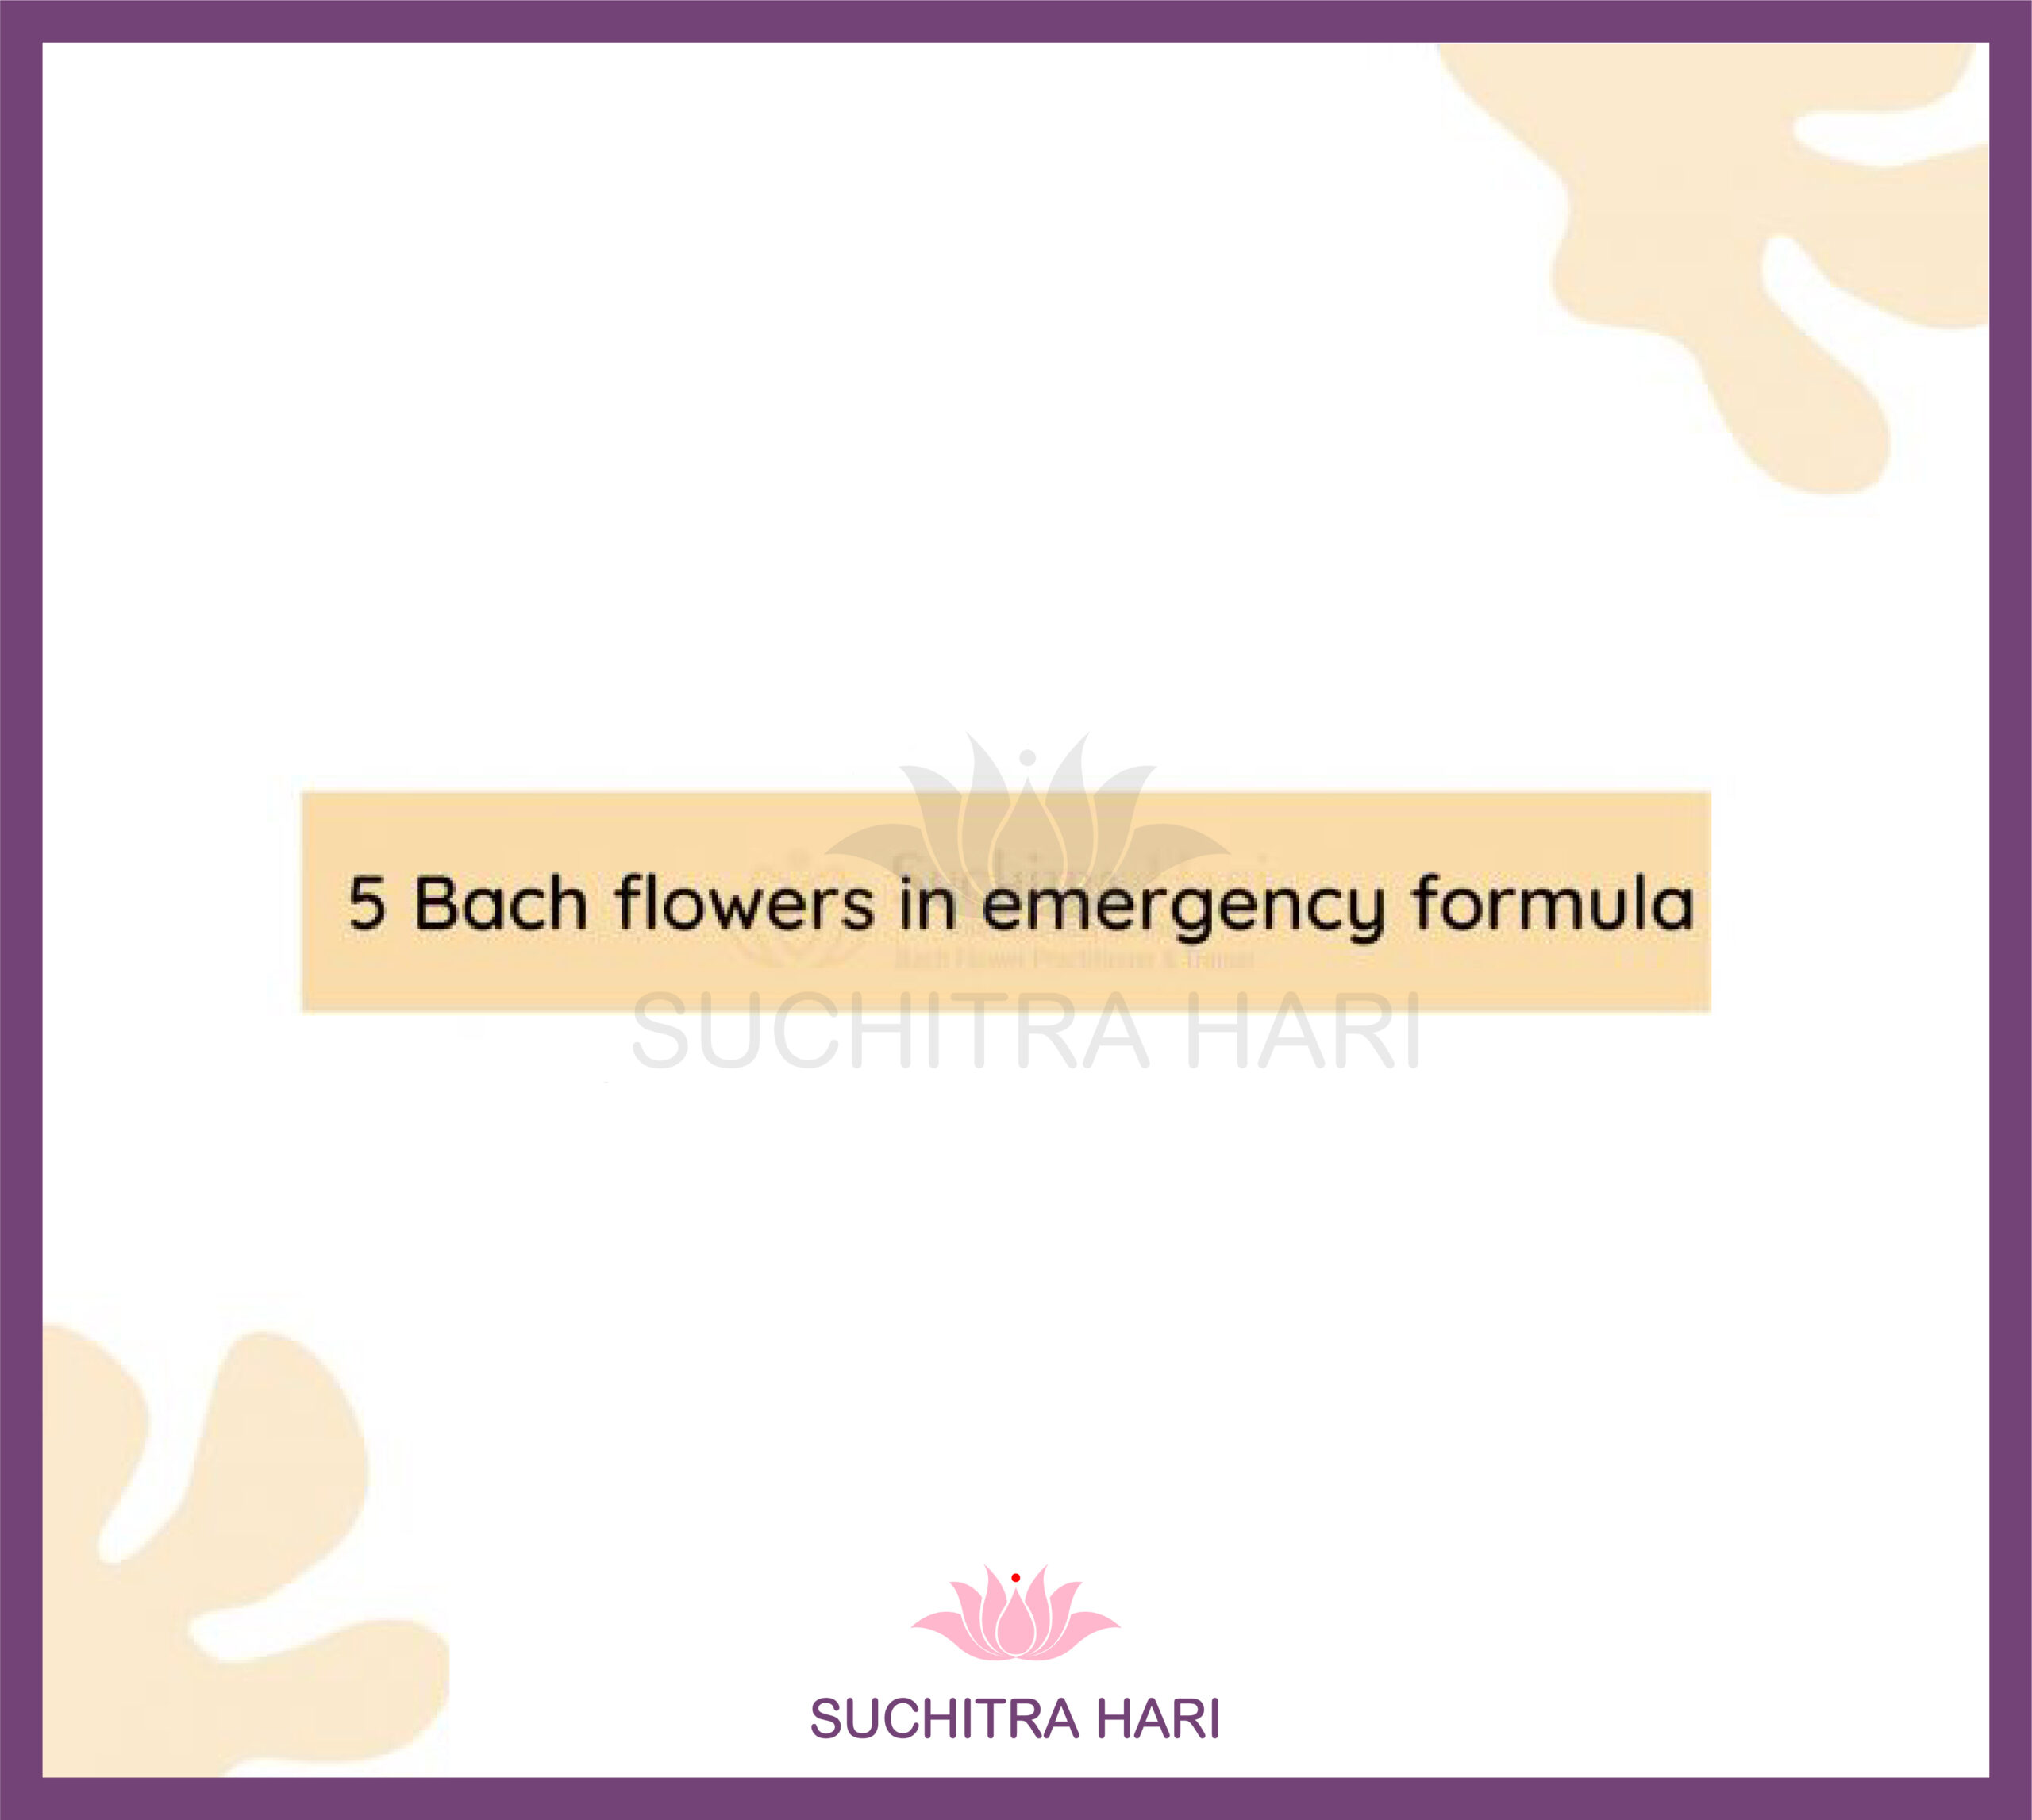 5 Bach flowers in emergency formula